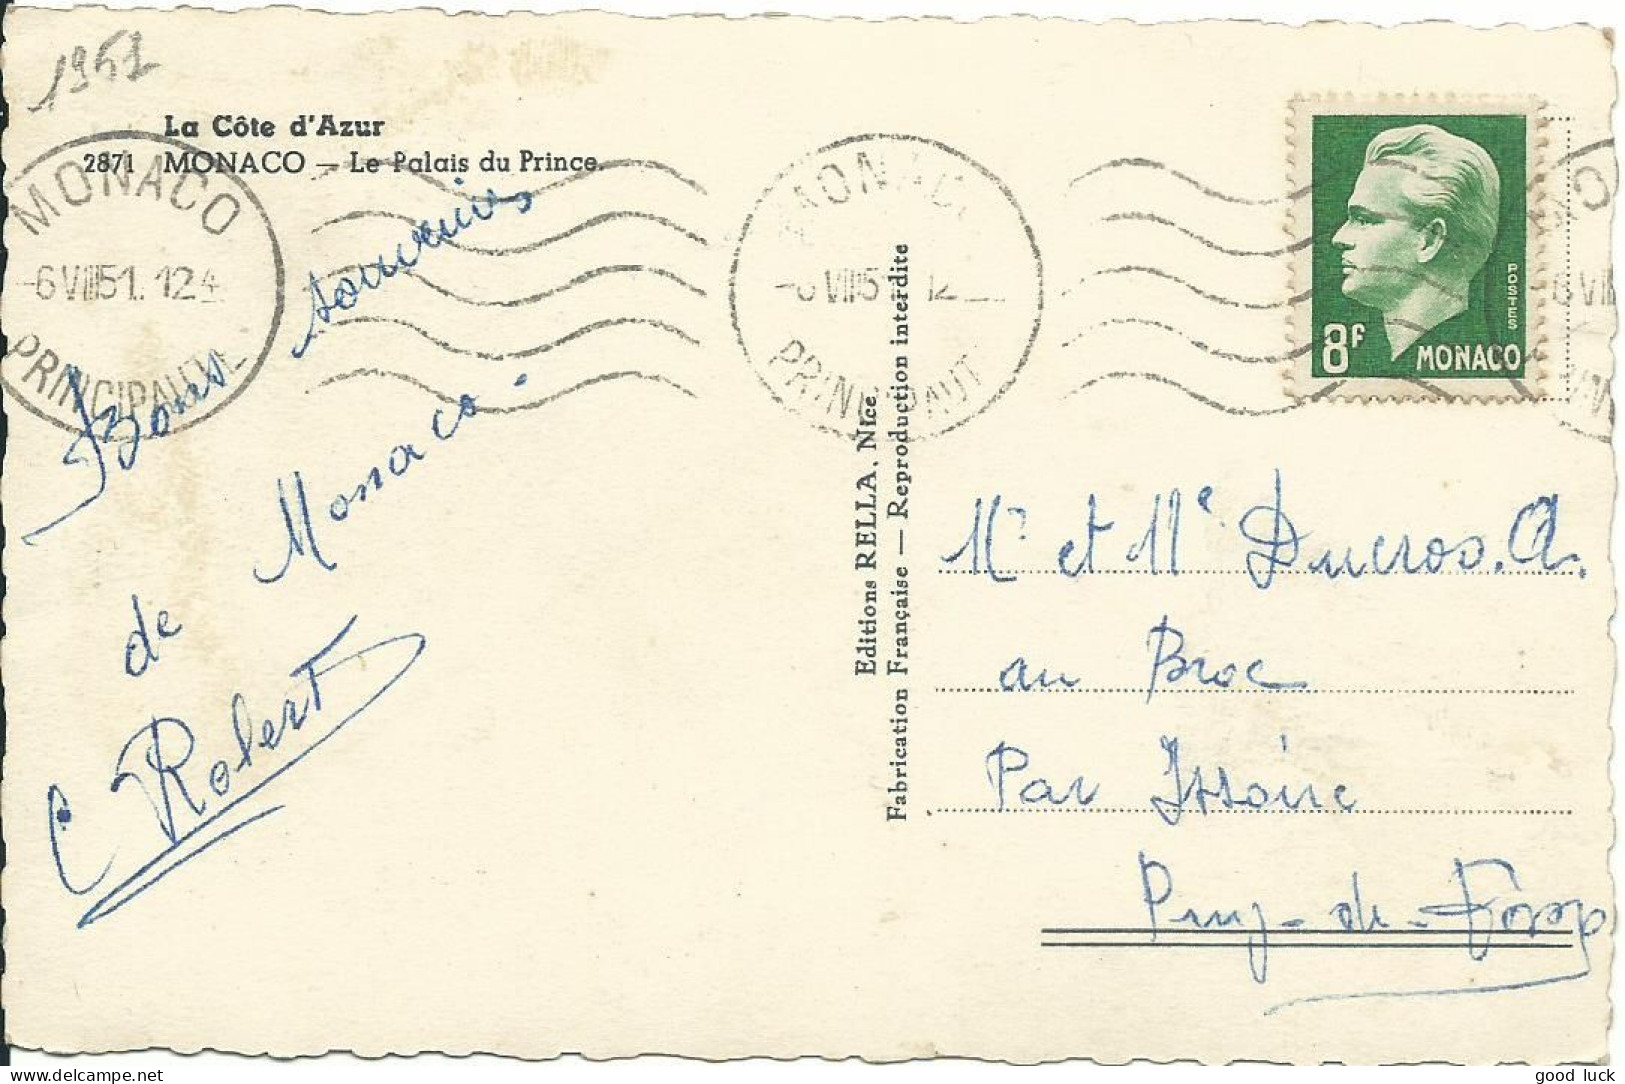 MONACO CARTE 8F MONACO POUR LE BROC ( PUY DE DOME ) DE 1951 LETTRE COVER - Covers & Documents